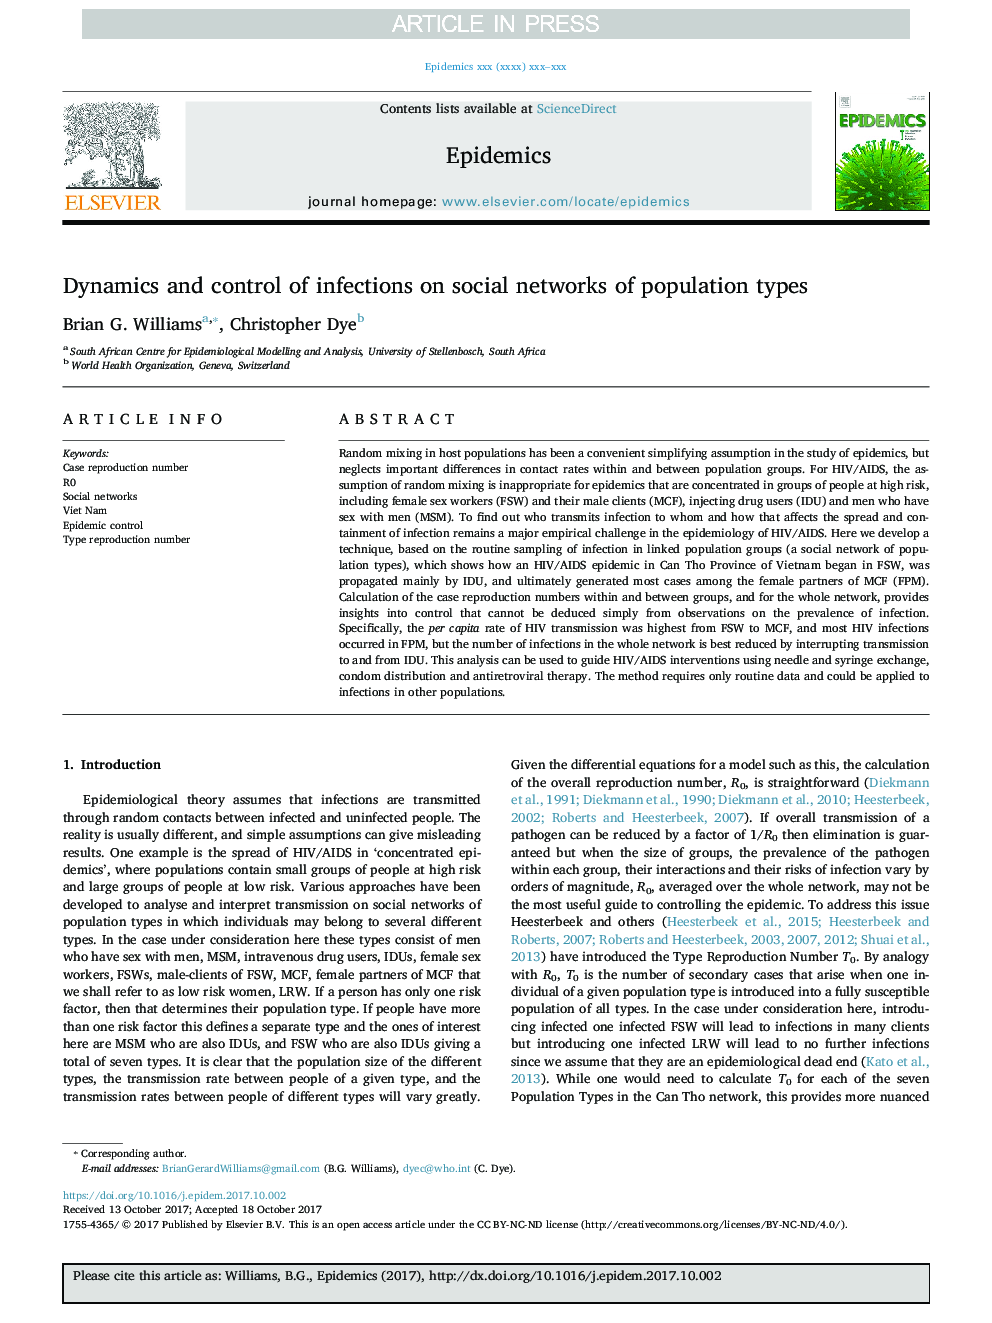 دینامیک و کنترل عفونت در شبکه های اجتماعی انواع جمعیت 